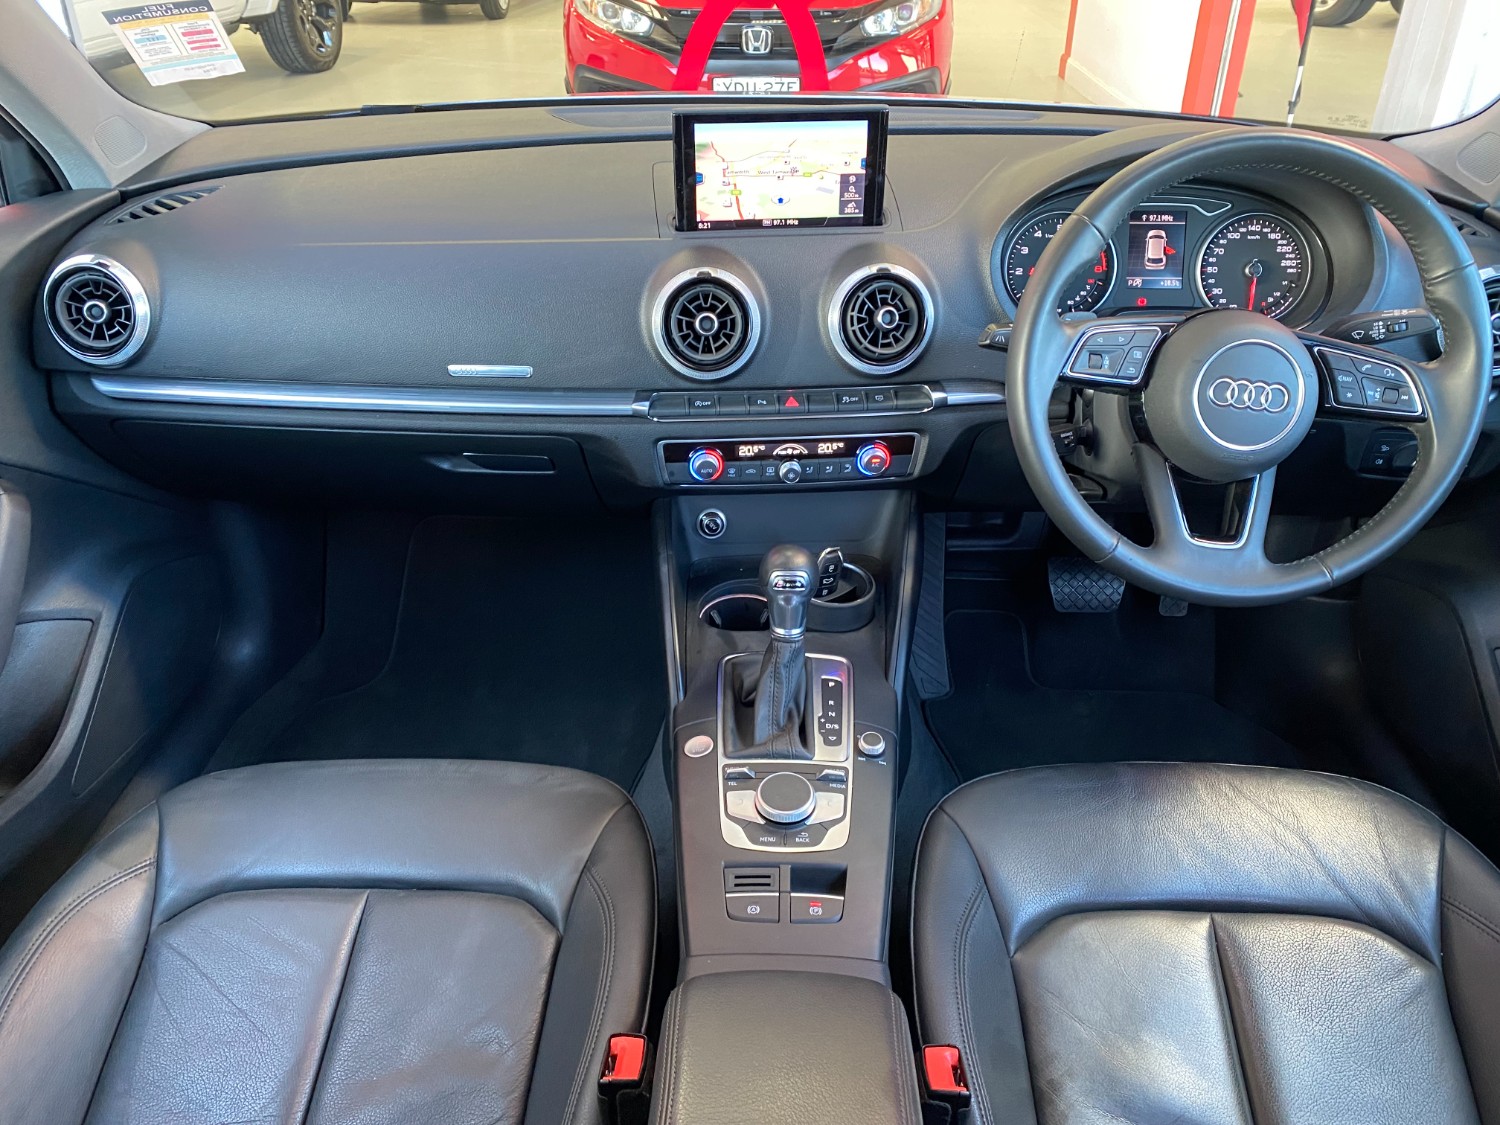 2019 MY20 Audi A3 8V Turbo 35 TFSI Hatch Image 20